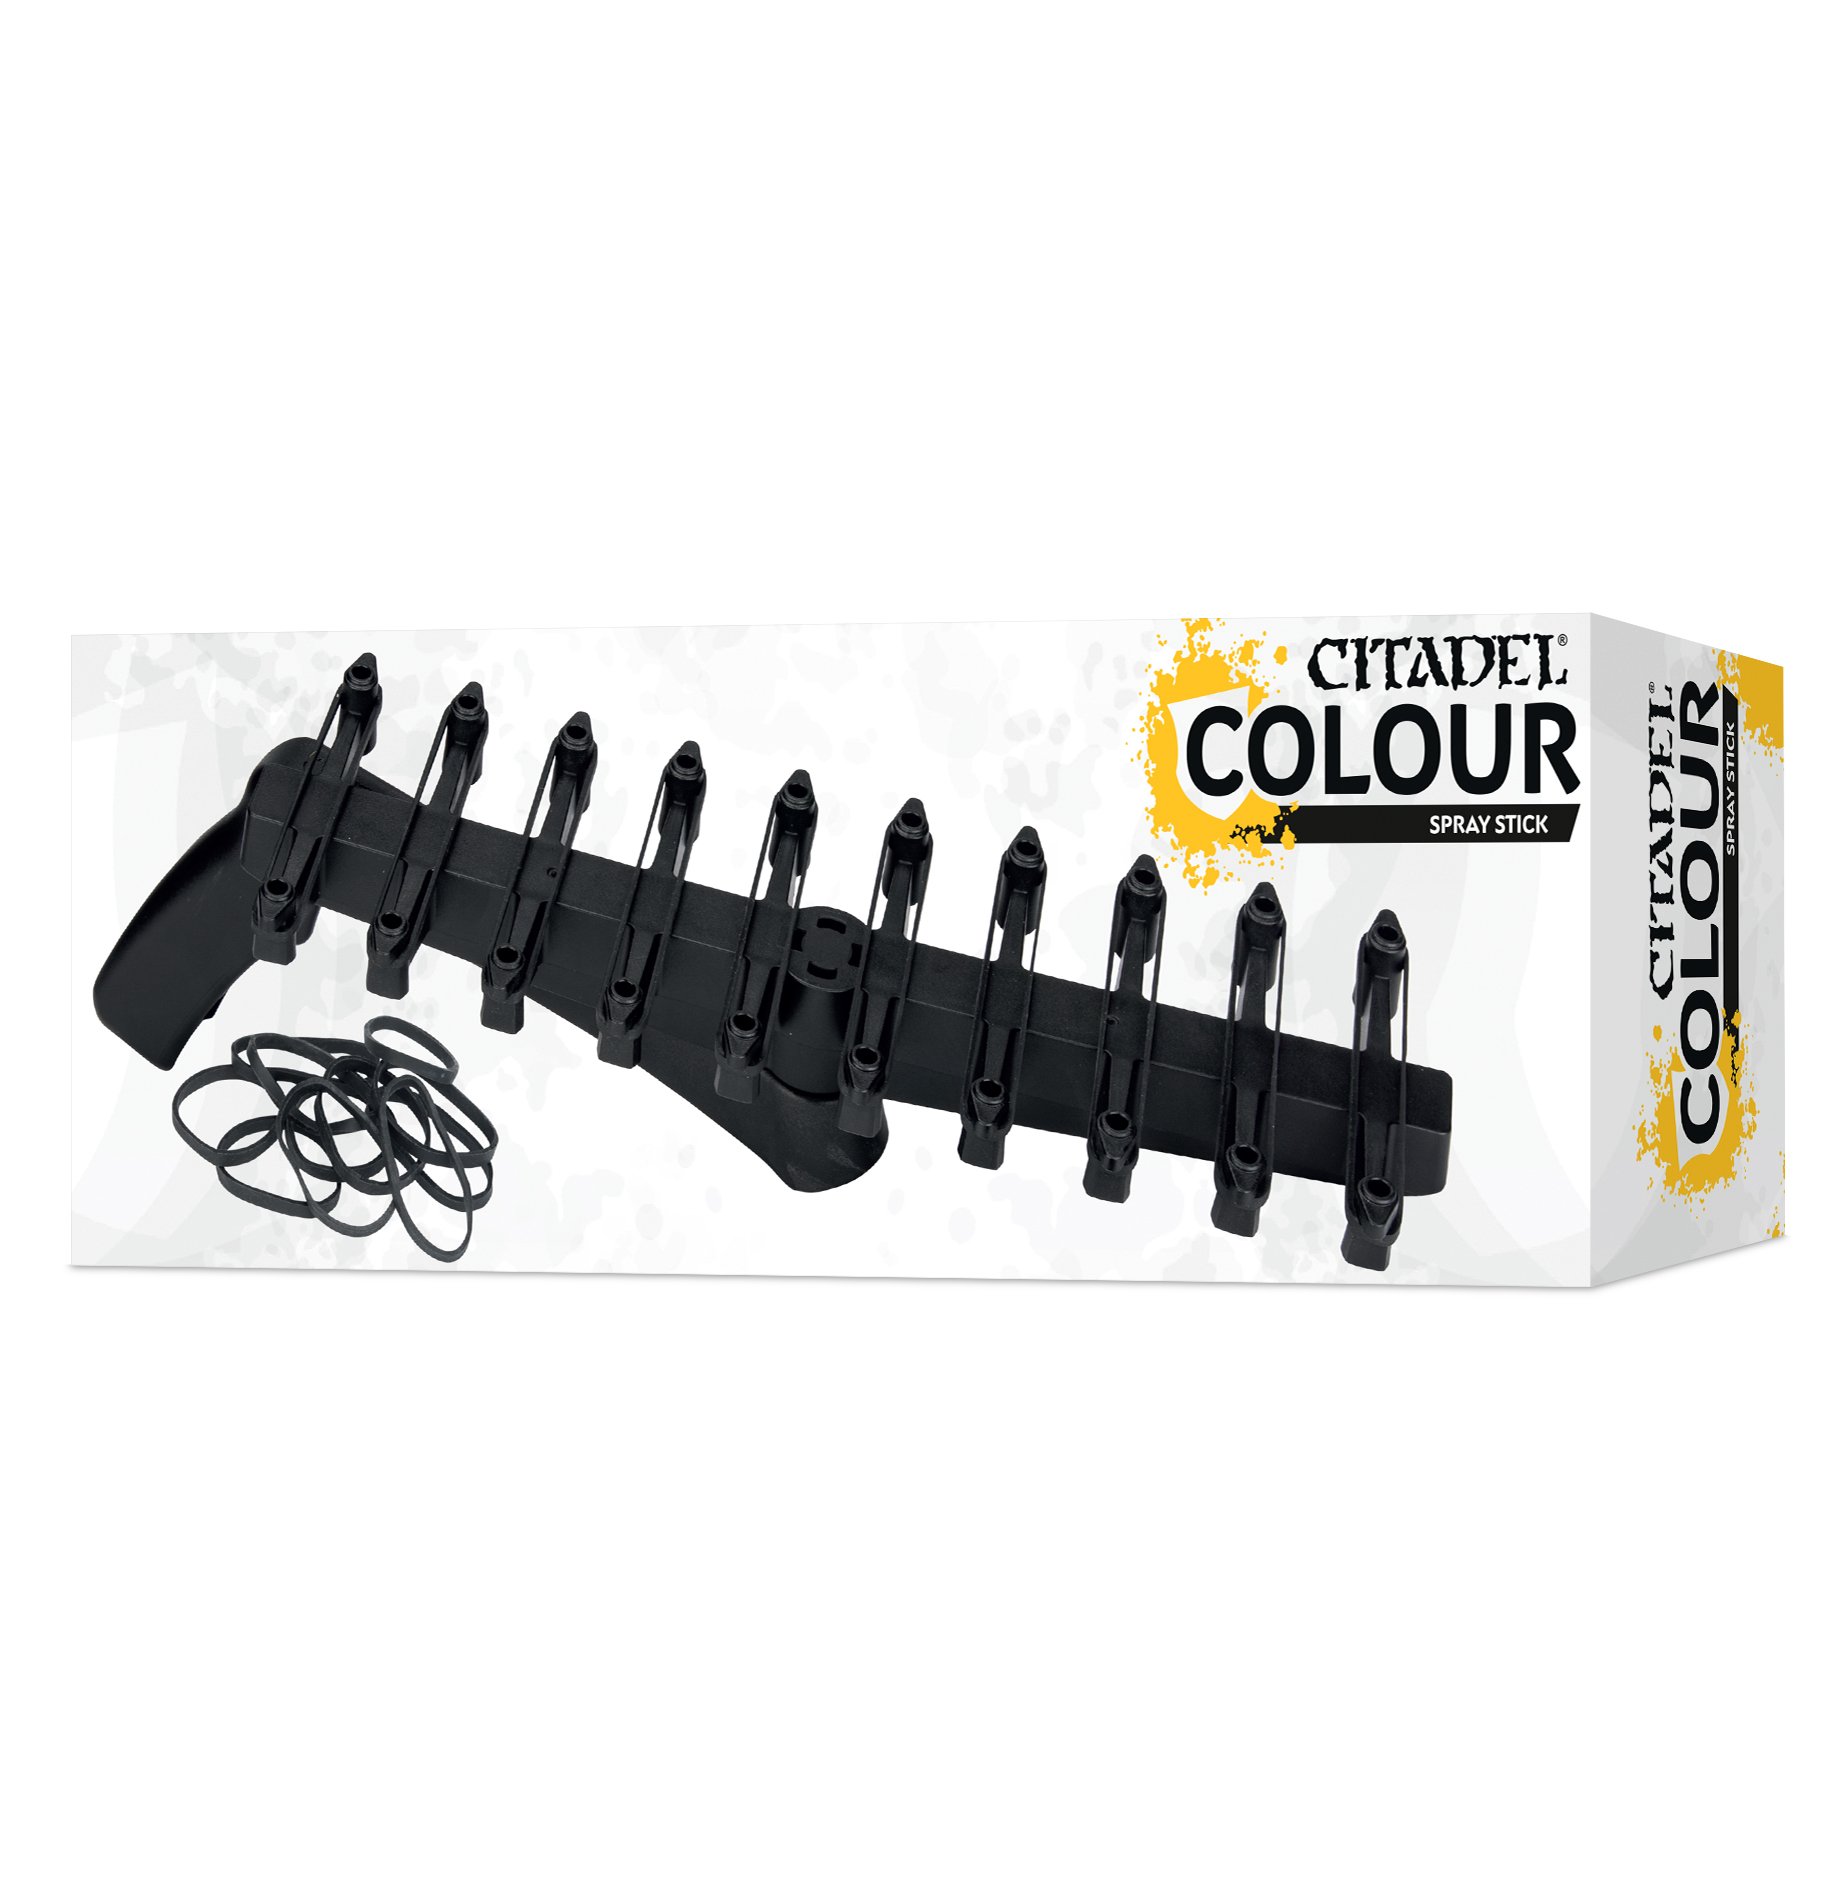 Citadel Colour: Tools - Citadel Spray Stick 